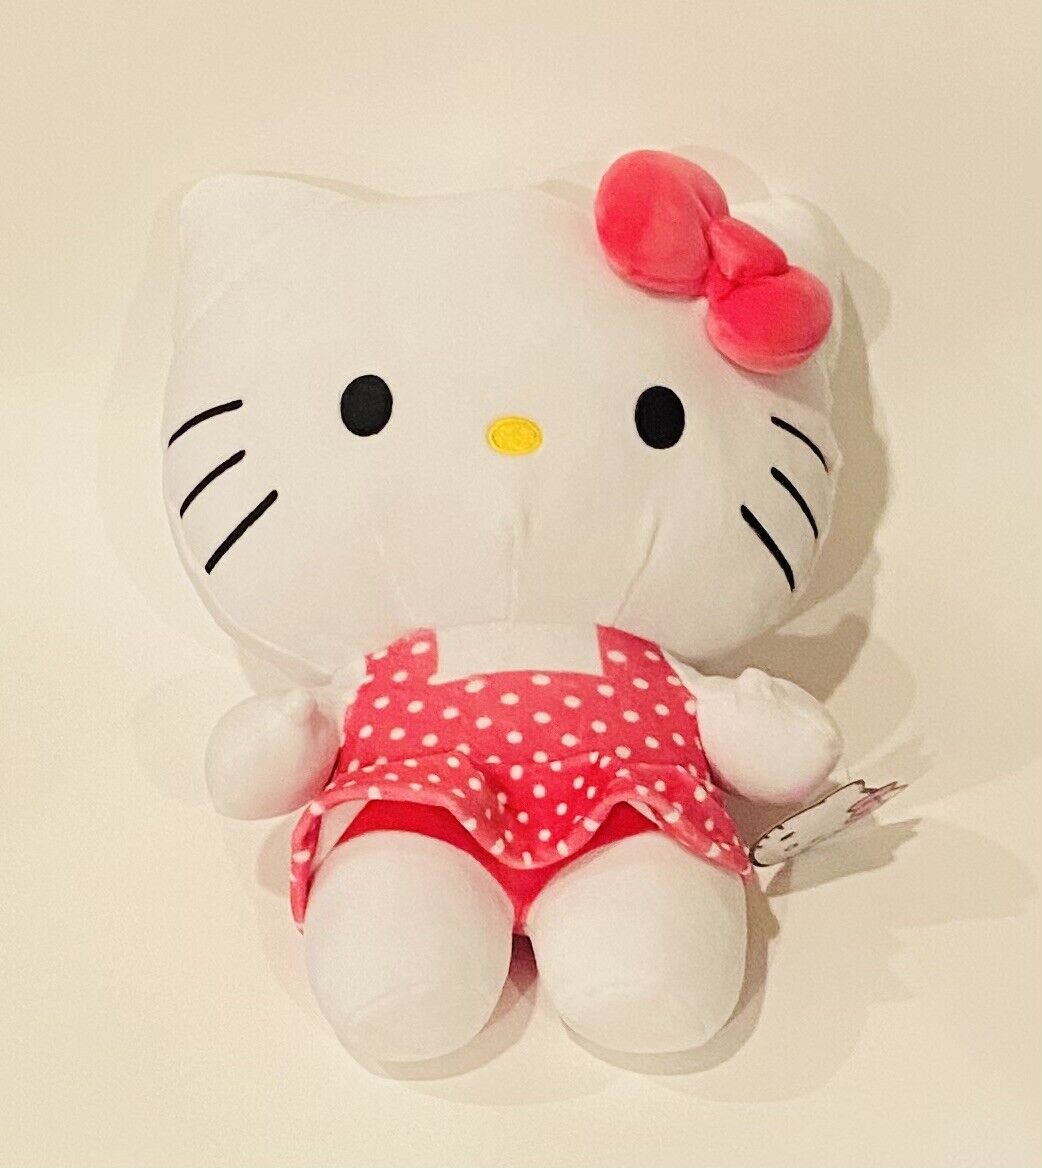 Sanrio Hello Kitty Plush Pink White Polka Dot Dress Stuffed Plush Toy